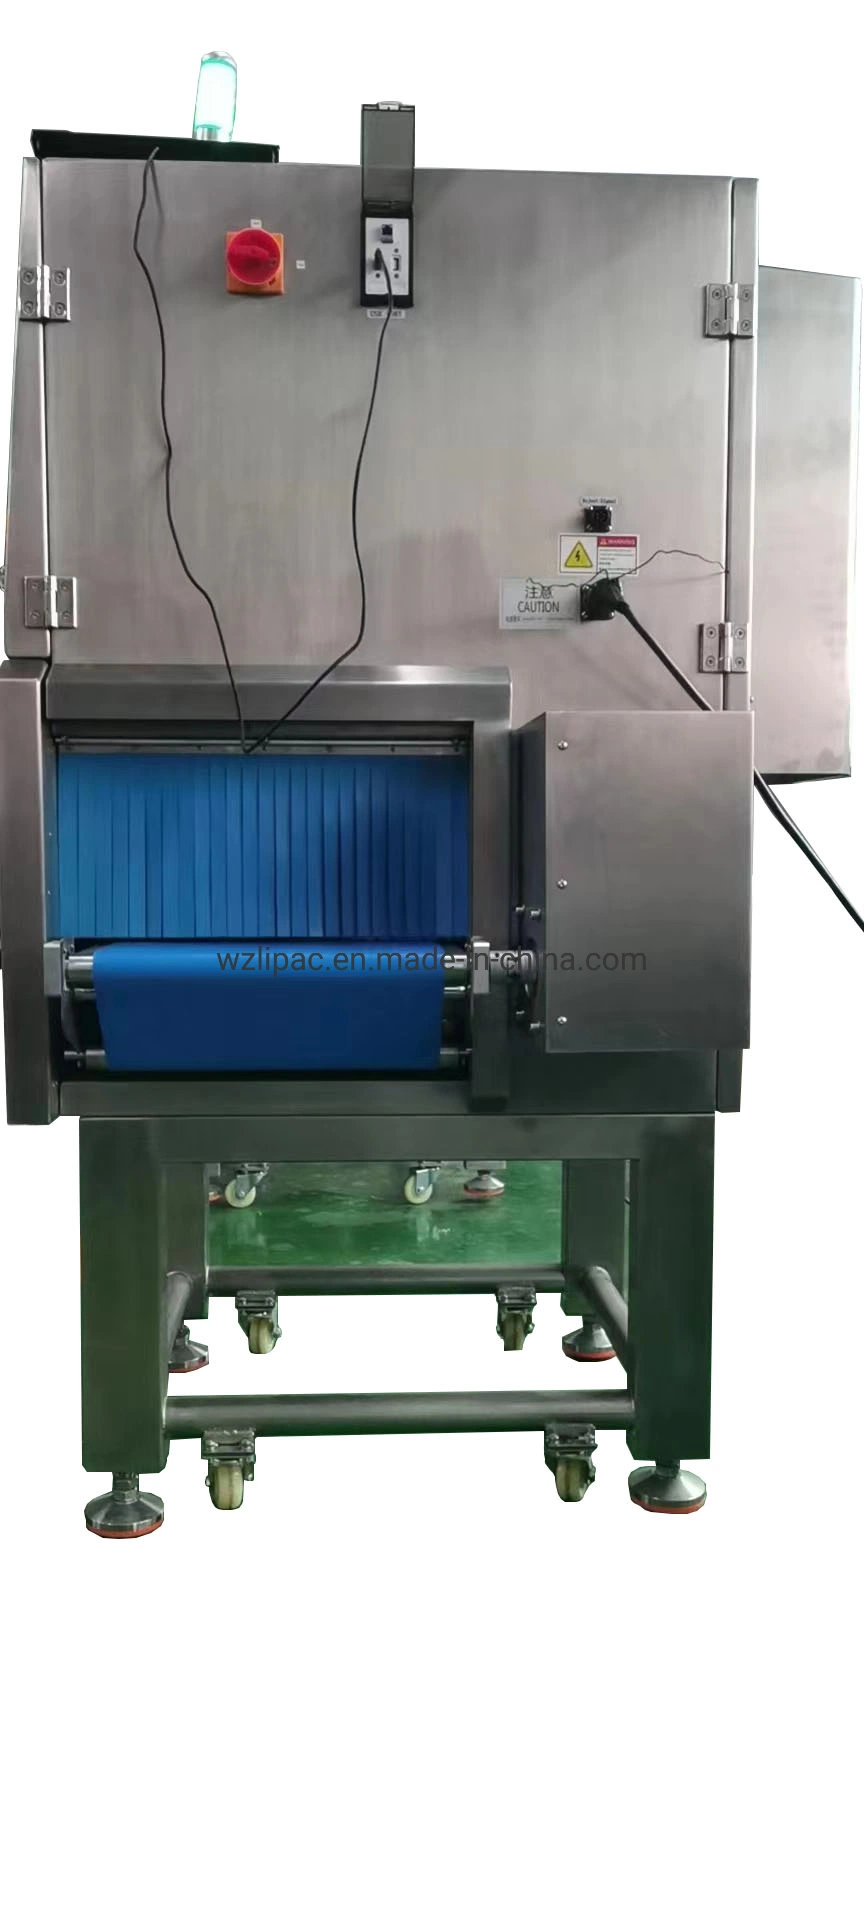 Lpx-3500D X-ray High Definition промышленных инспекционной детектор для продуктов питания посторонние материалы загрязнения, посторонний предмет обнаружения